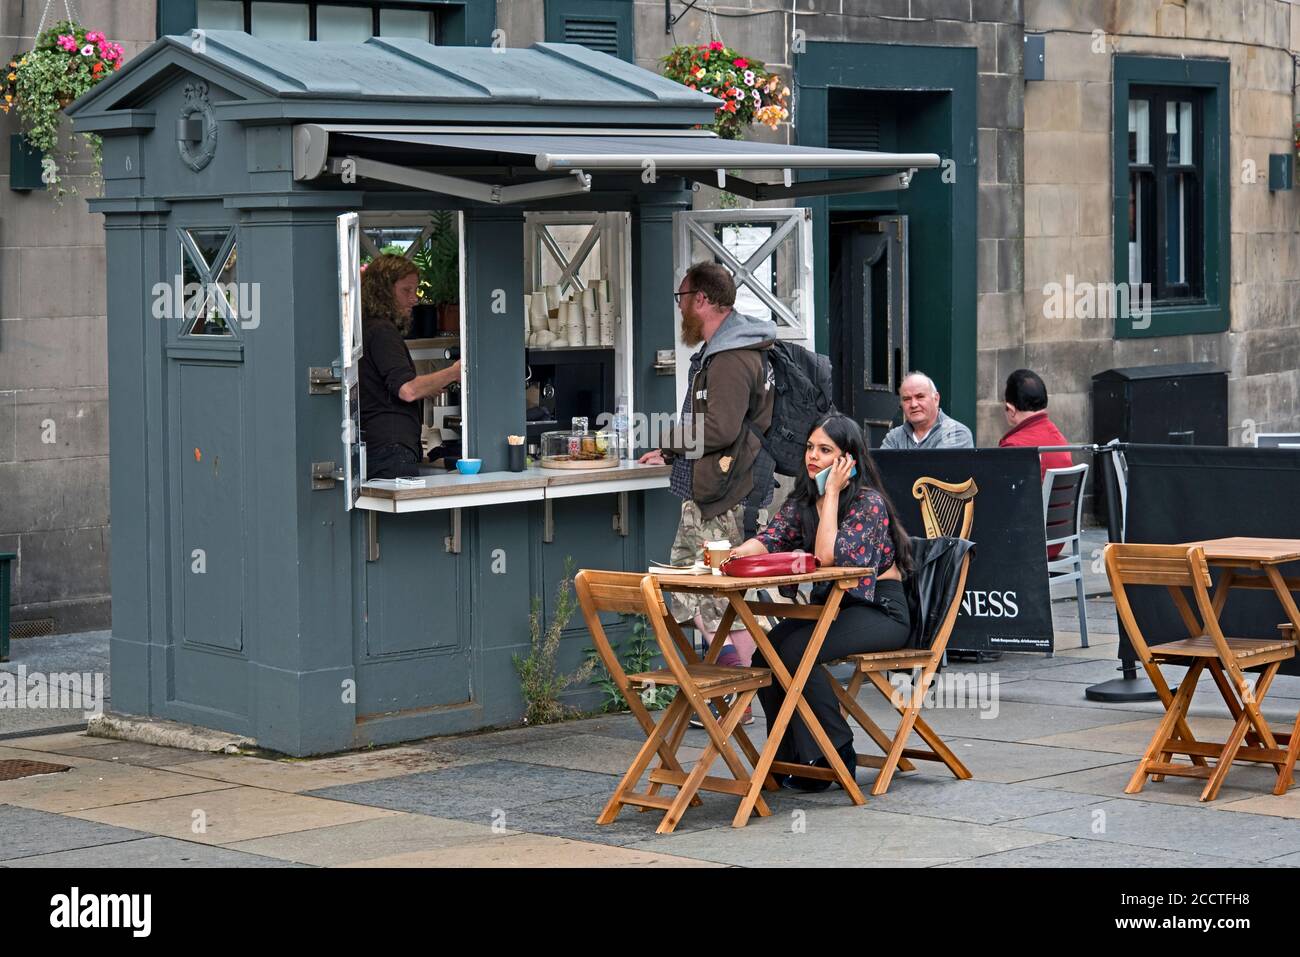 Une ancienne boîte de police à Édimbourg qui a été transformée en une cabine de café sur Lothian Road, Édimbourg, Écosse, Royaume-Uni. Banque D'Images